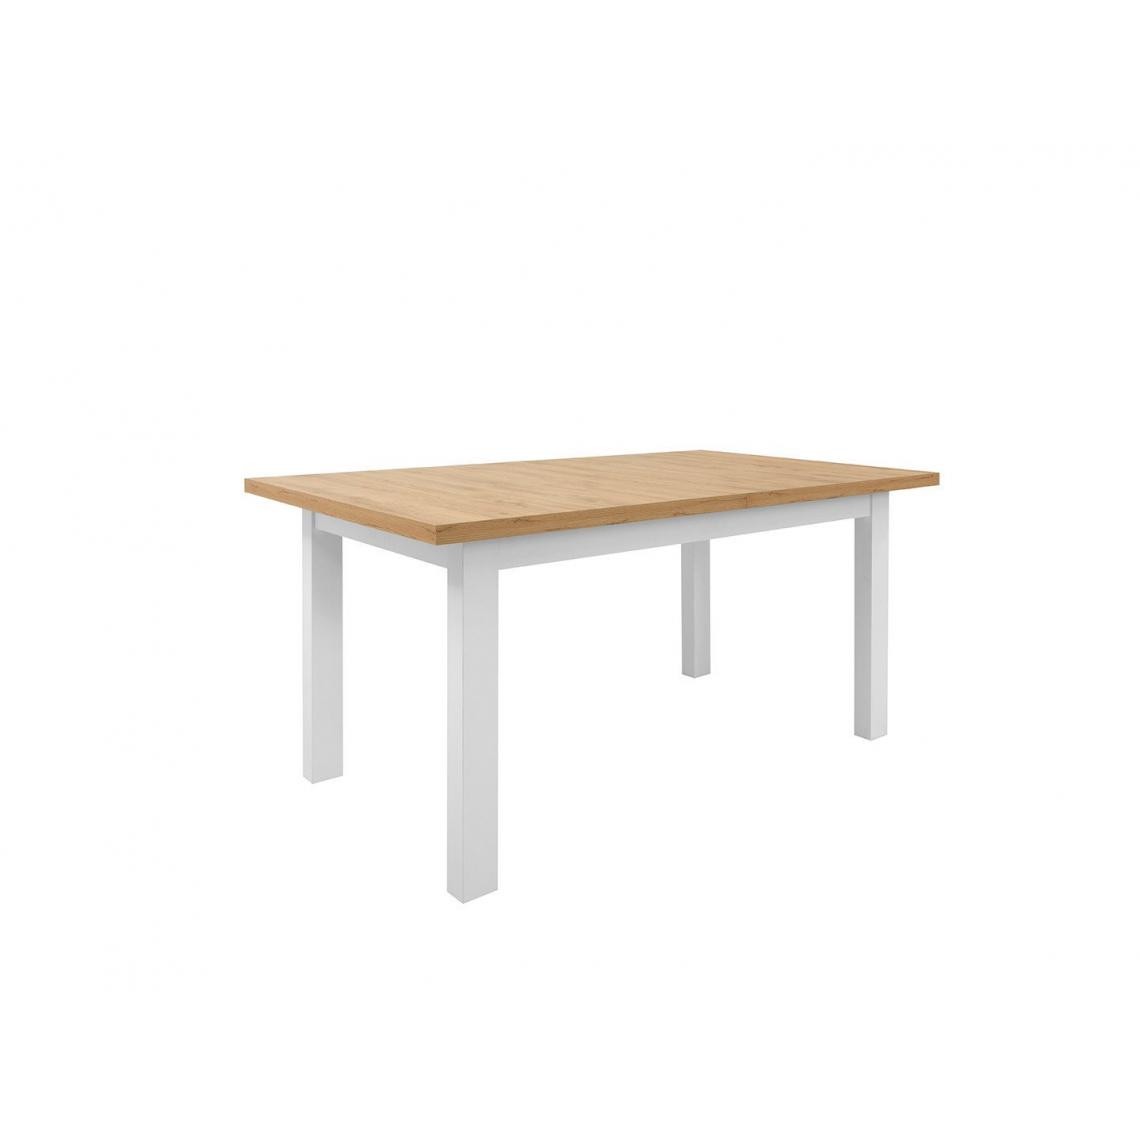 Hucoco - ELOIS - Table rectangulaire style scandinave salon/cuisine - 160-200x90x76.5 - Extensible - Table de salle à manger - Chêne - Tables d'appoint